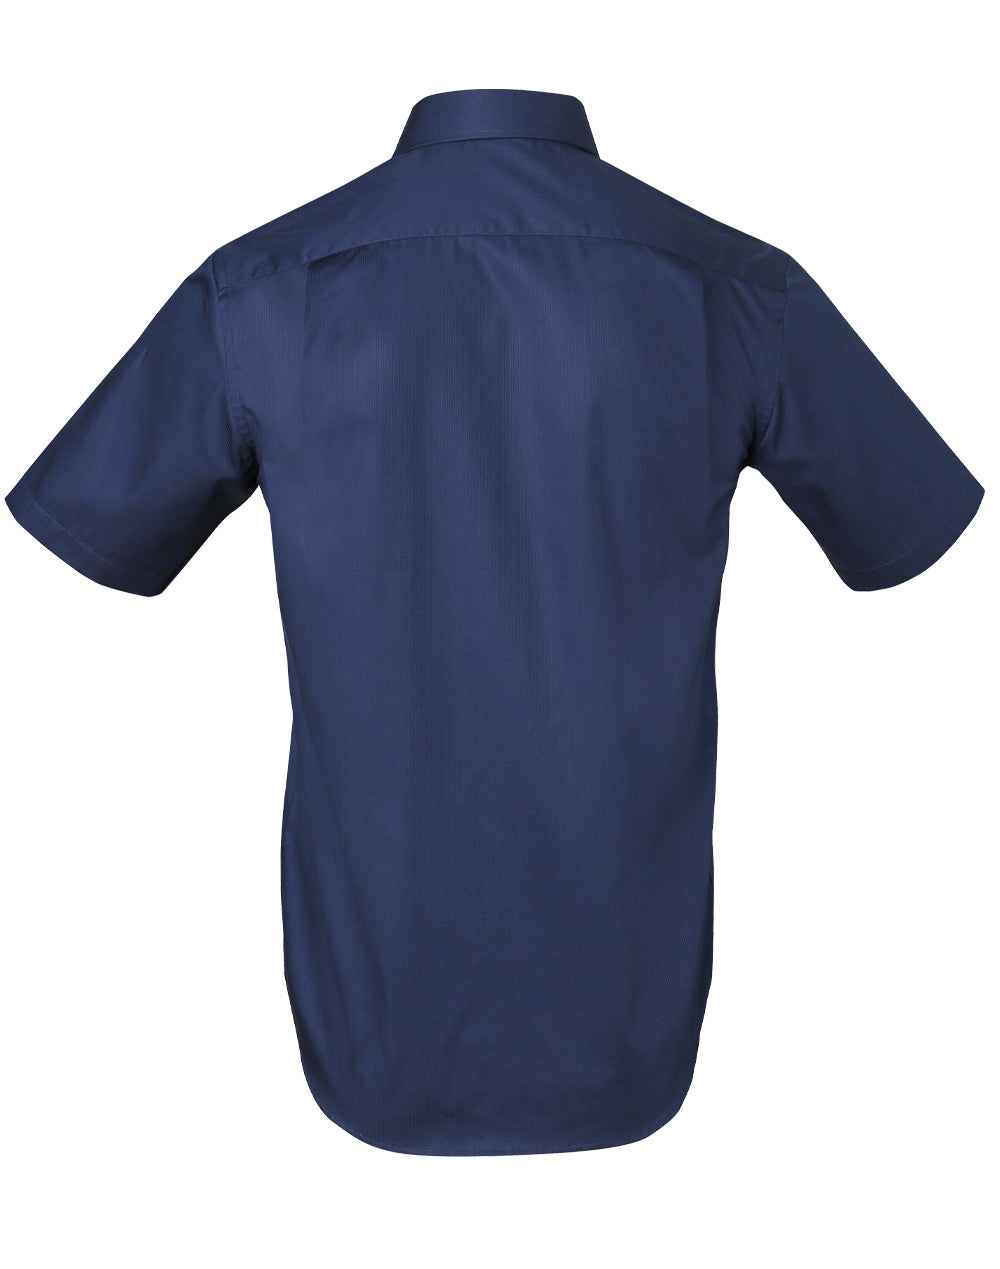 Winning Spirit-Barkley Mens Taped Seam Short Sleeve Shirt-M7110S